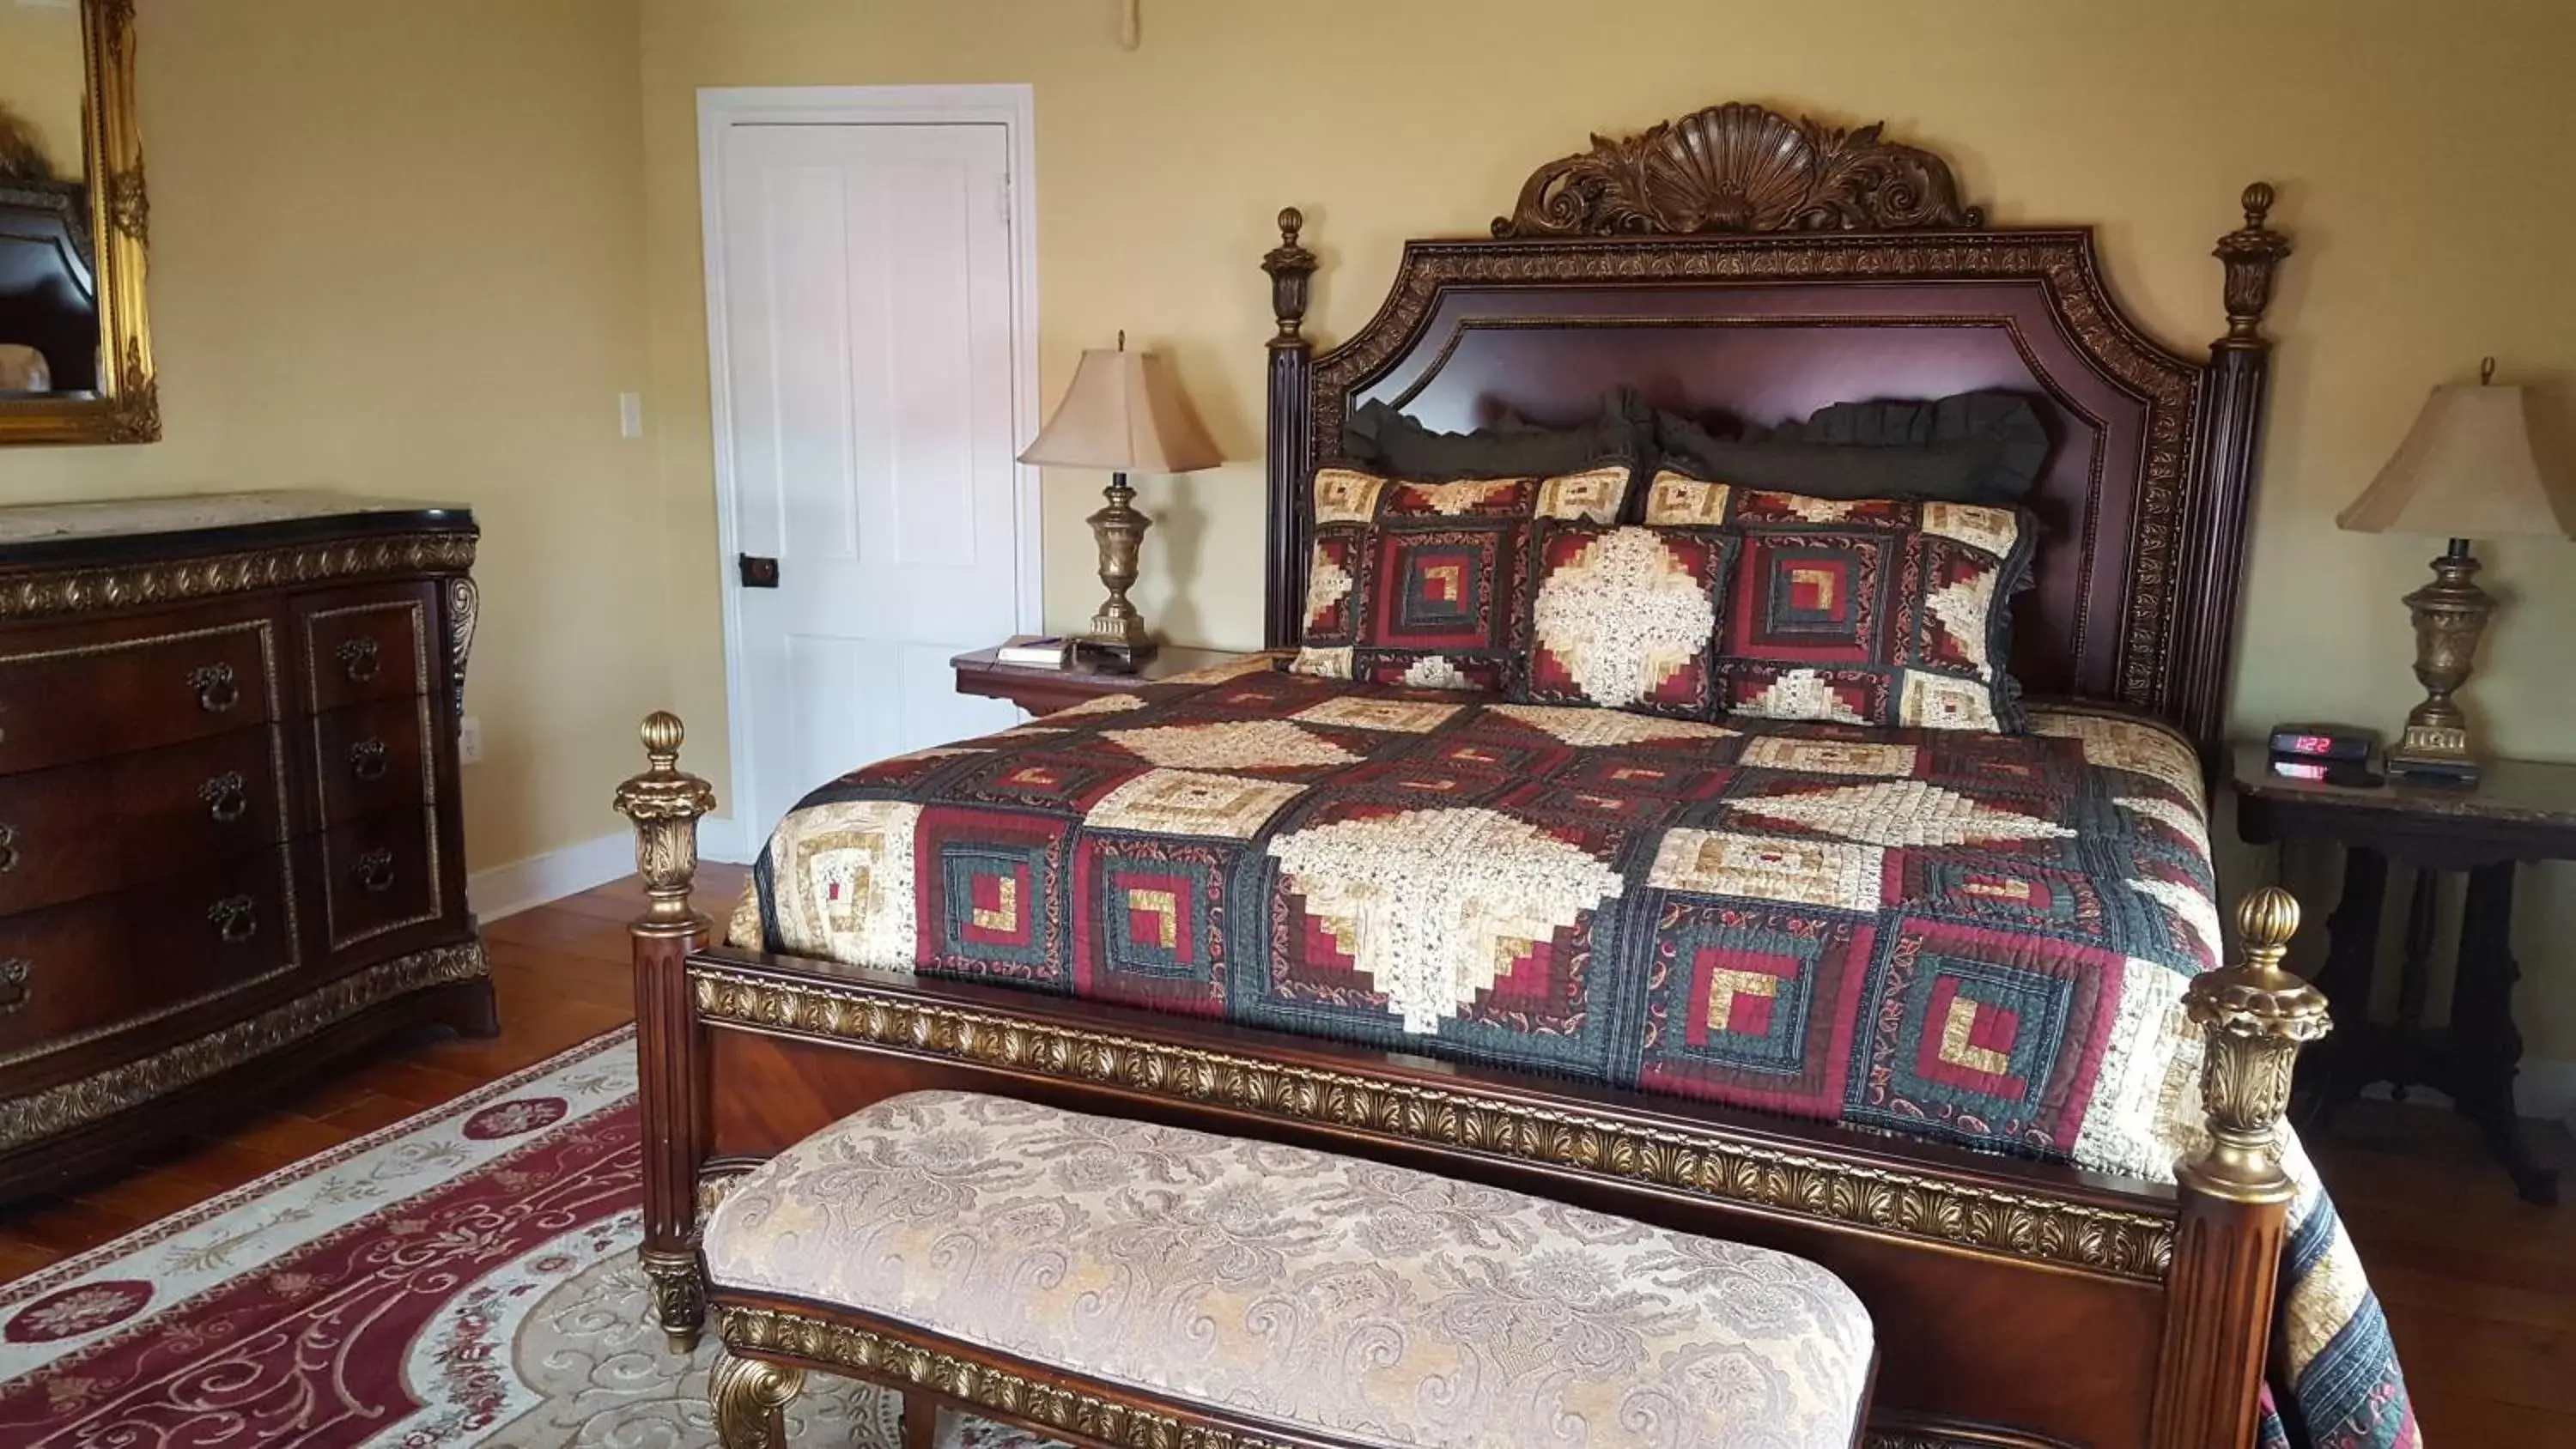 Bedroom, Room Photo in The Swope Manor Bed & Breakfast